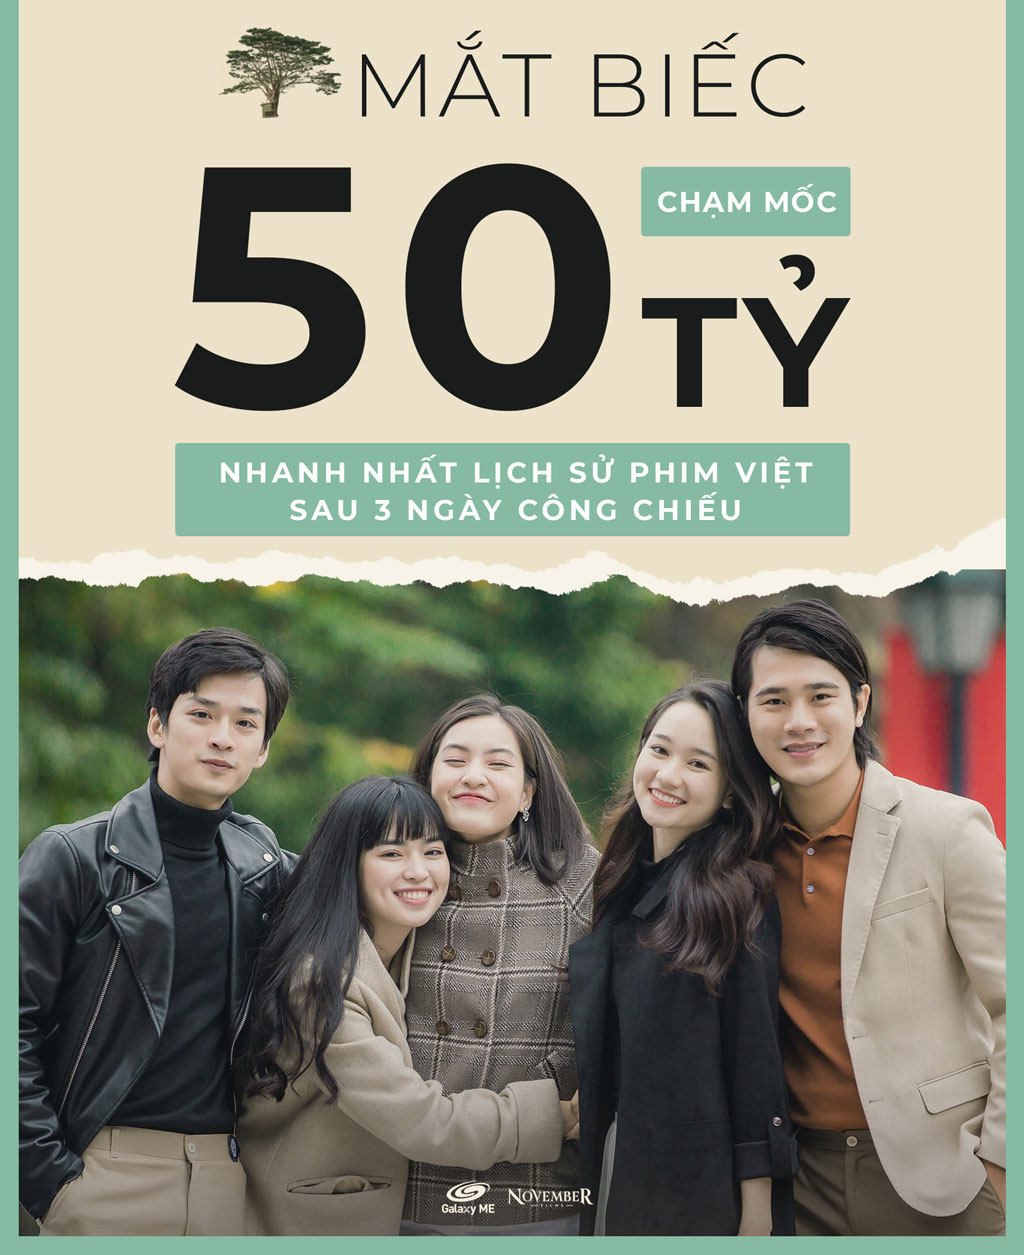 'Mắt biếc' trở thành phim Việt cán mốc 50 tỉ nhanh nhất lịch sử1